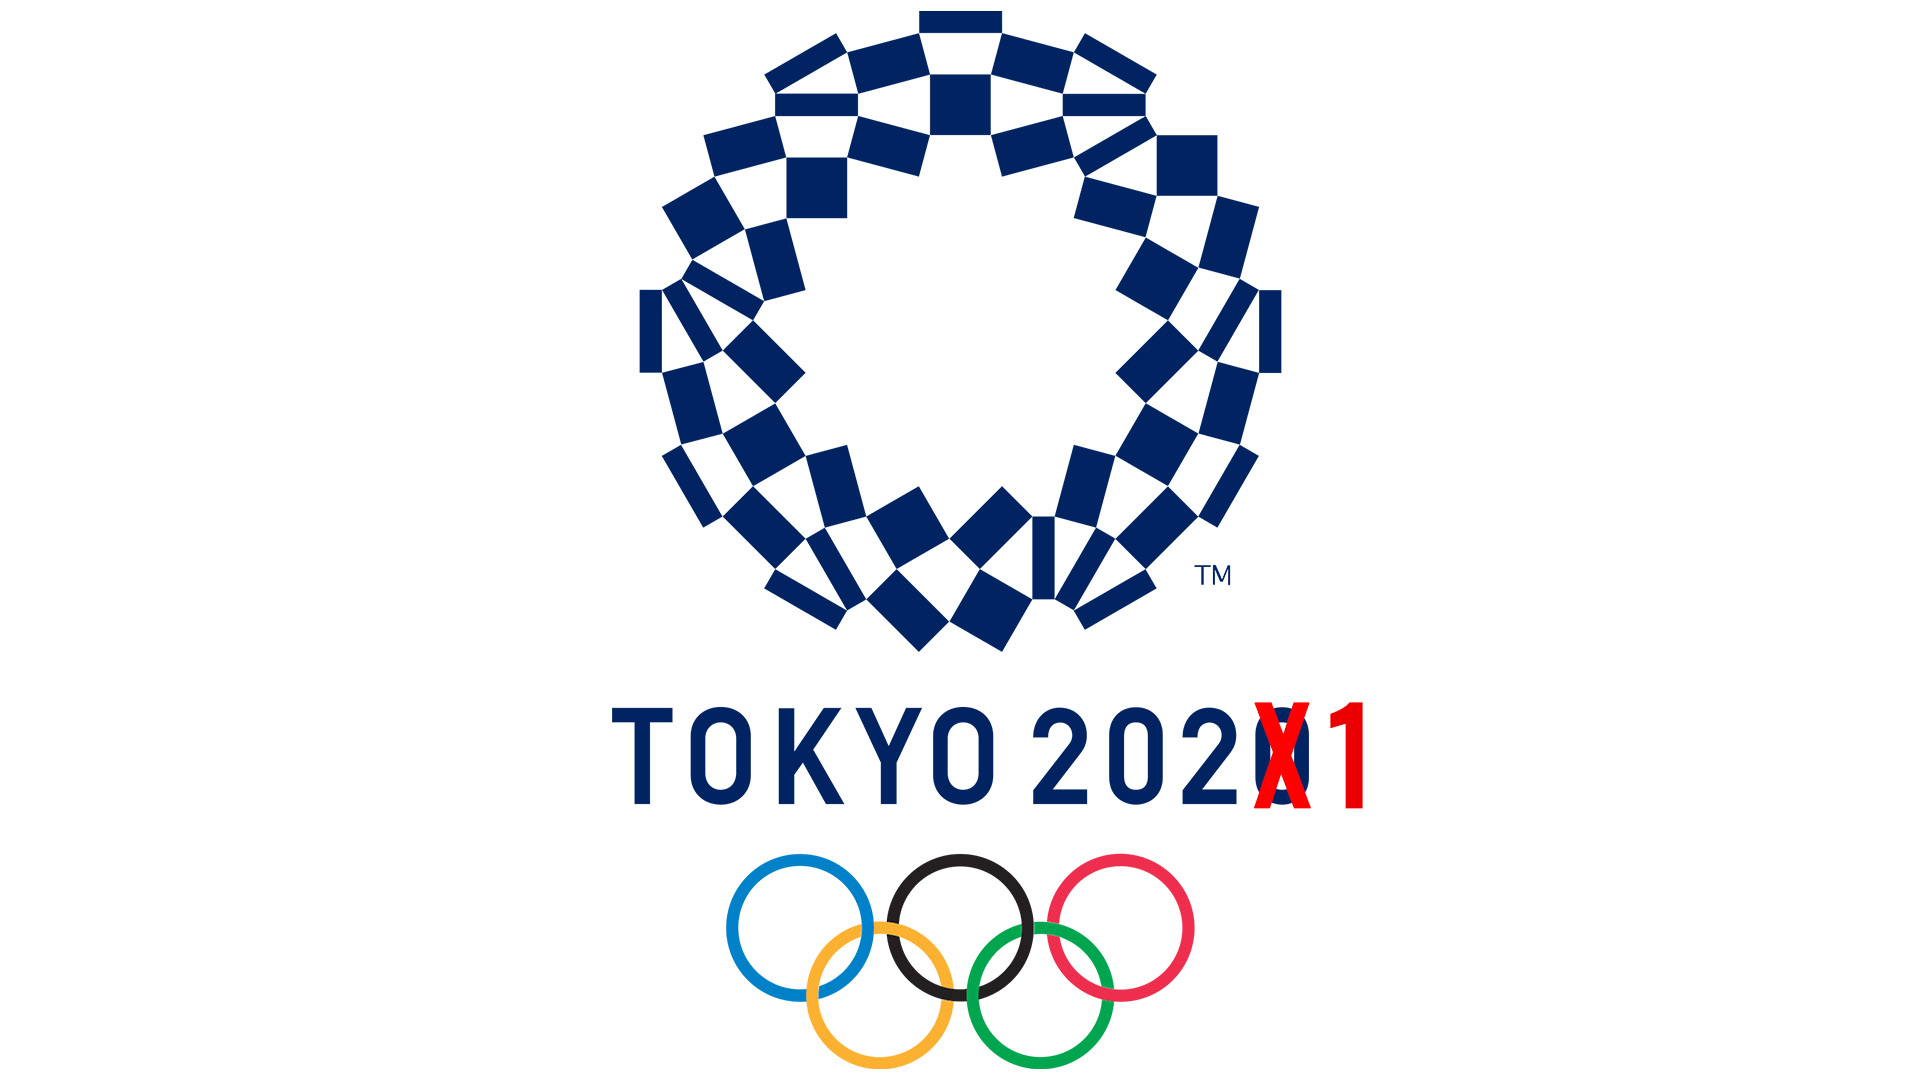 Coronavirus Les Jeux De Tokyo Reportes En 2021 L Evenement Niger